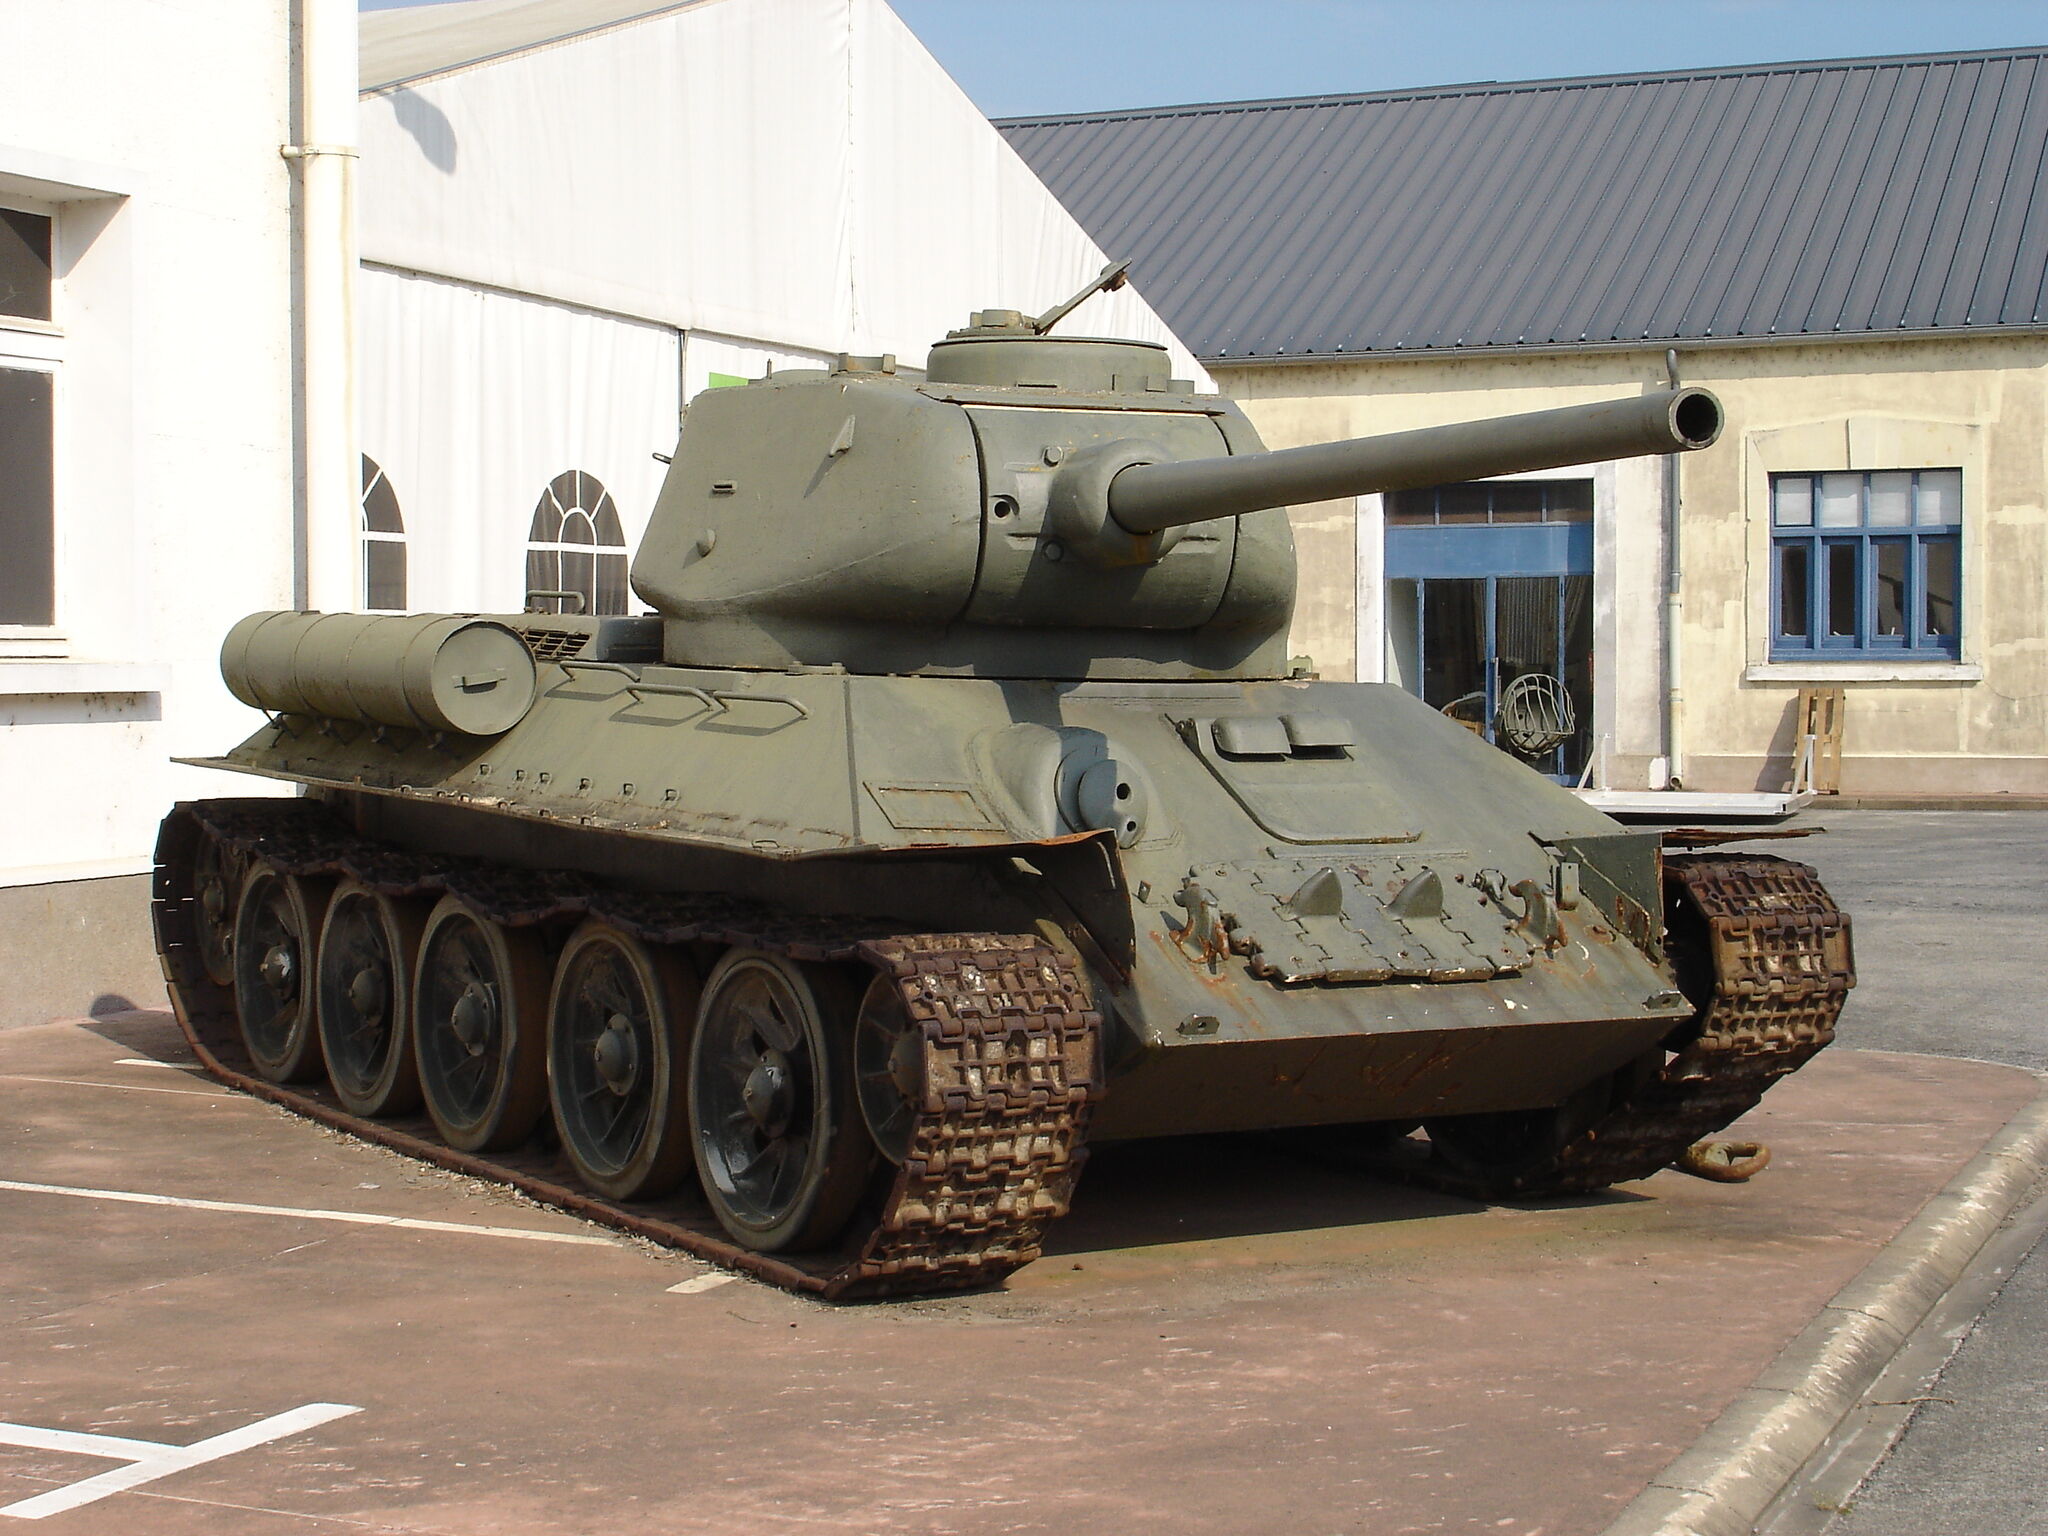 T-34 variants - Wikipedia